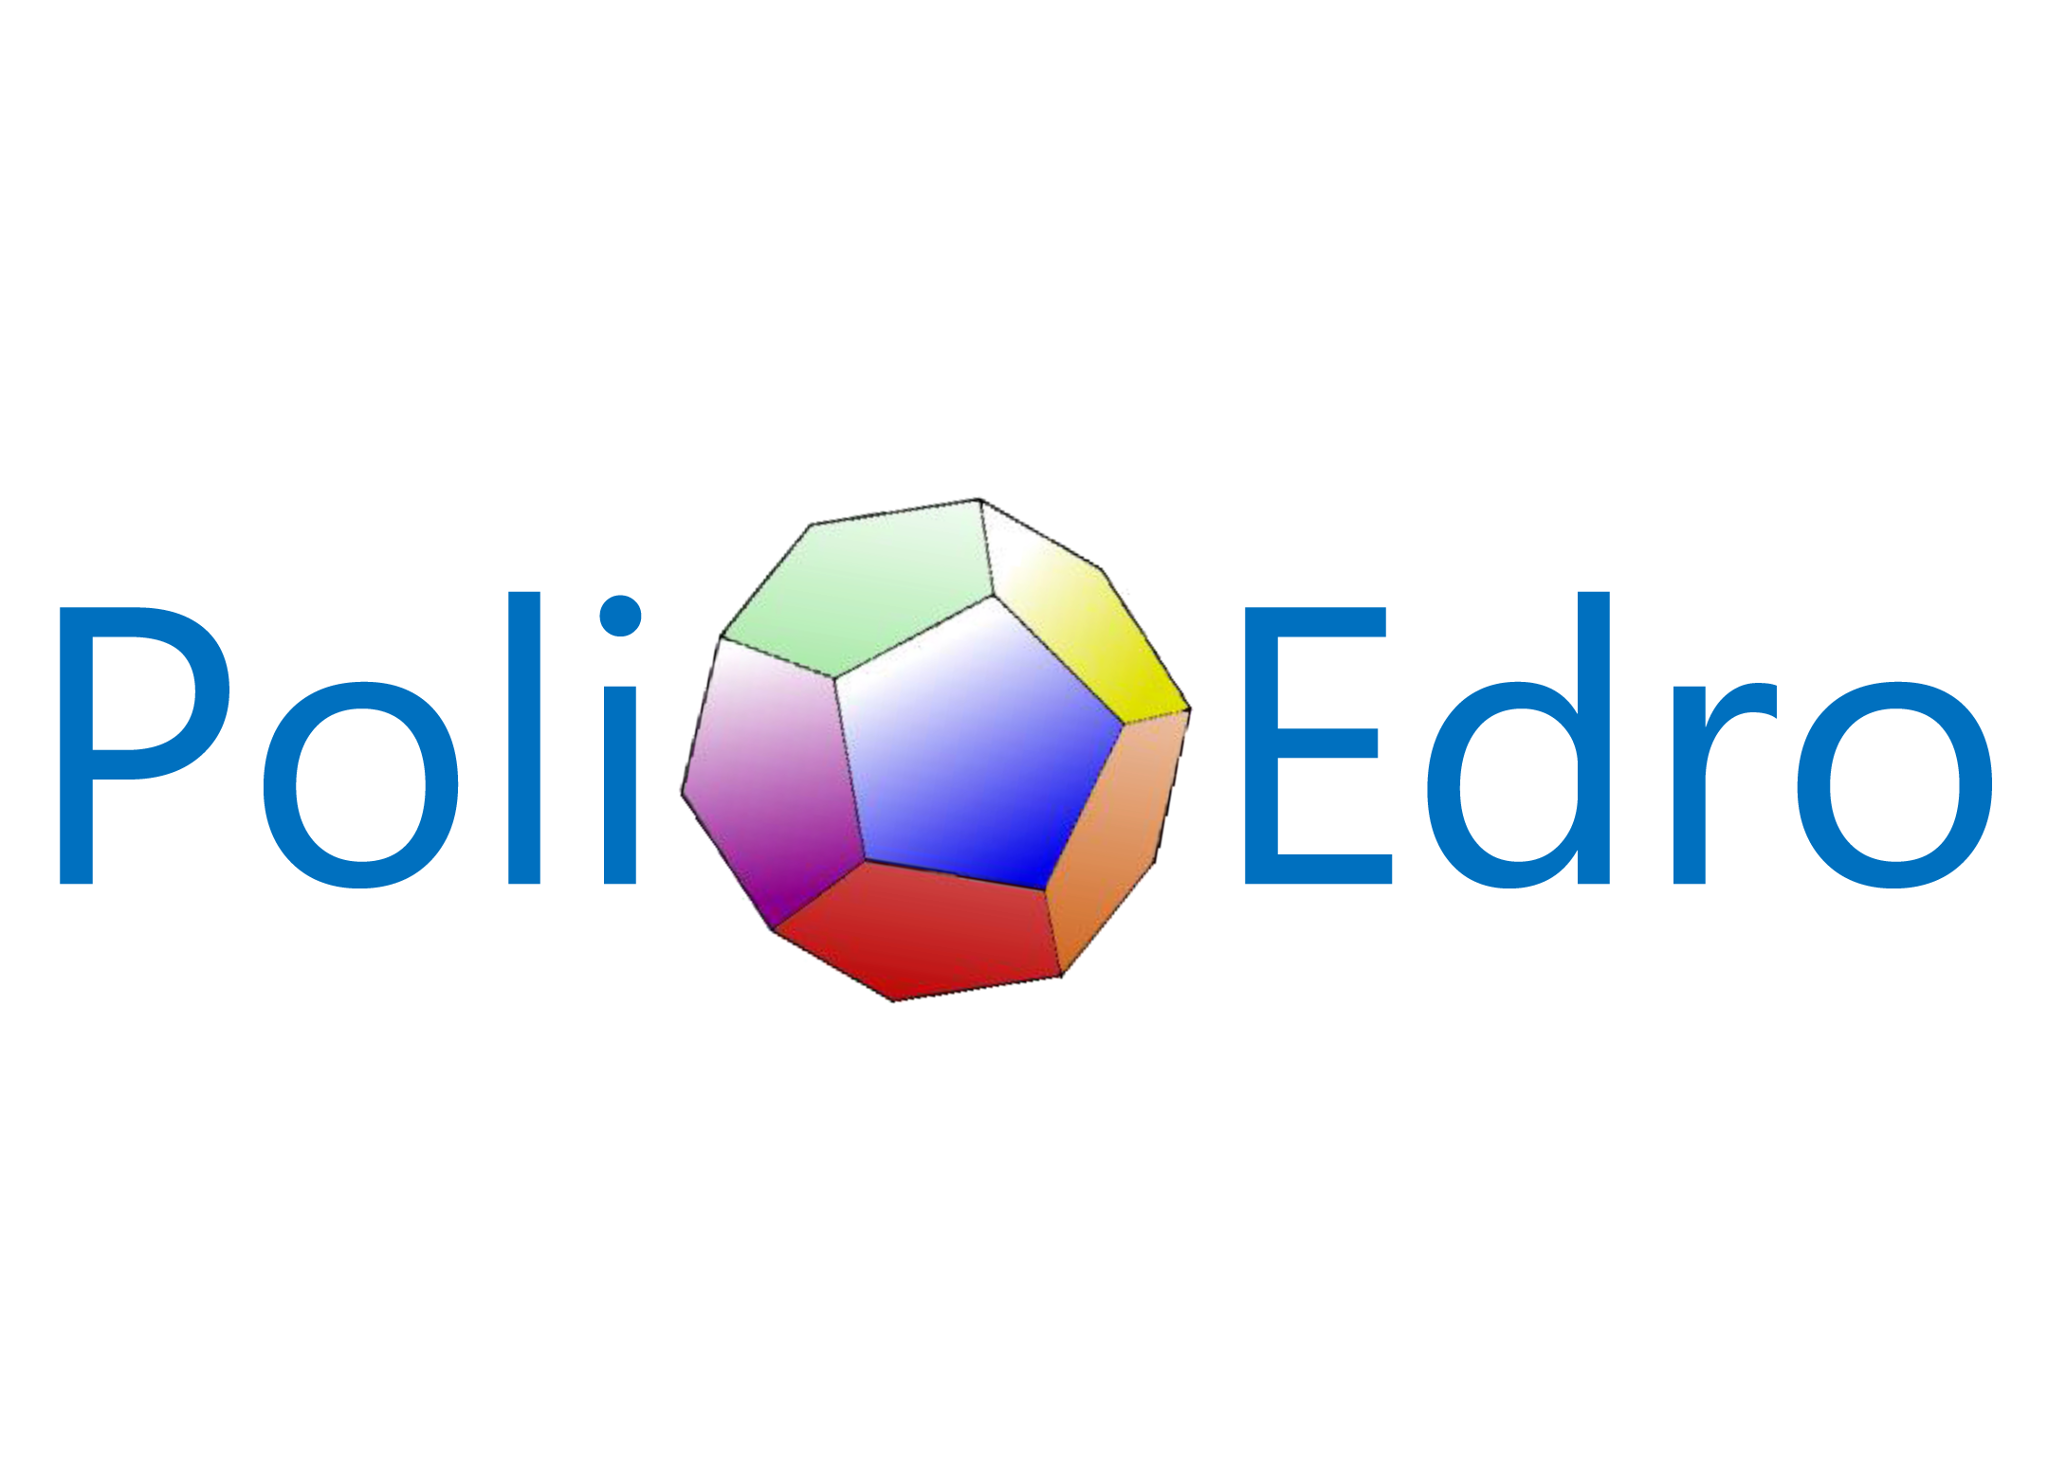 Il primo logo di PoliEdro